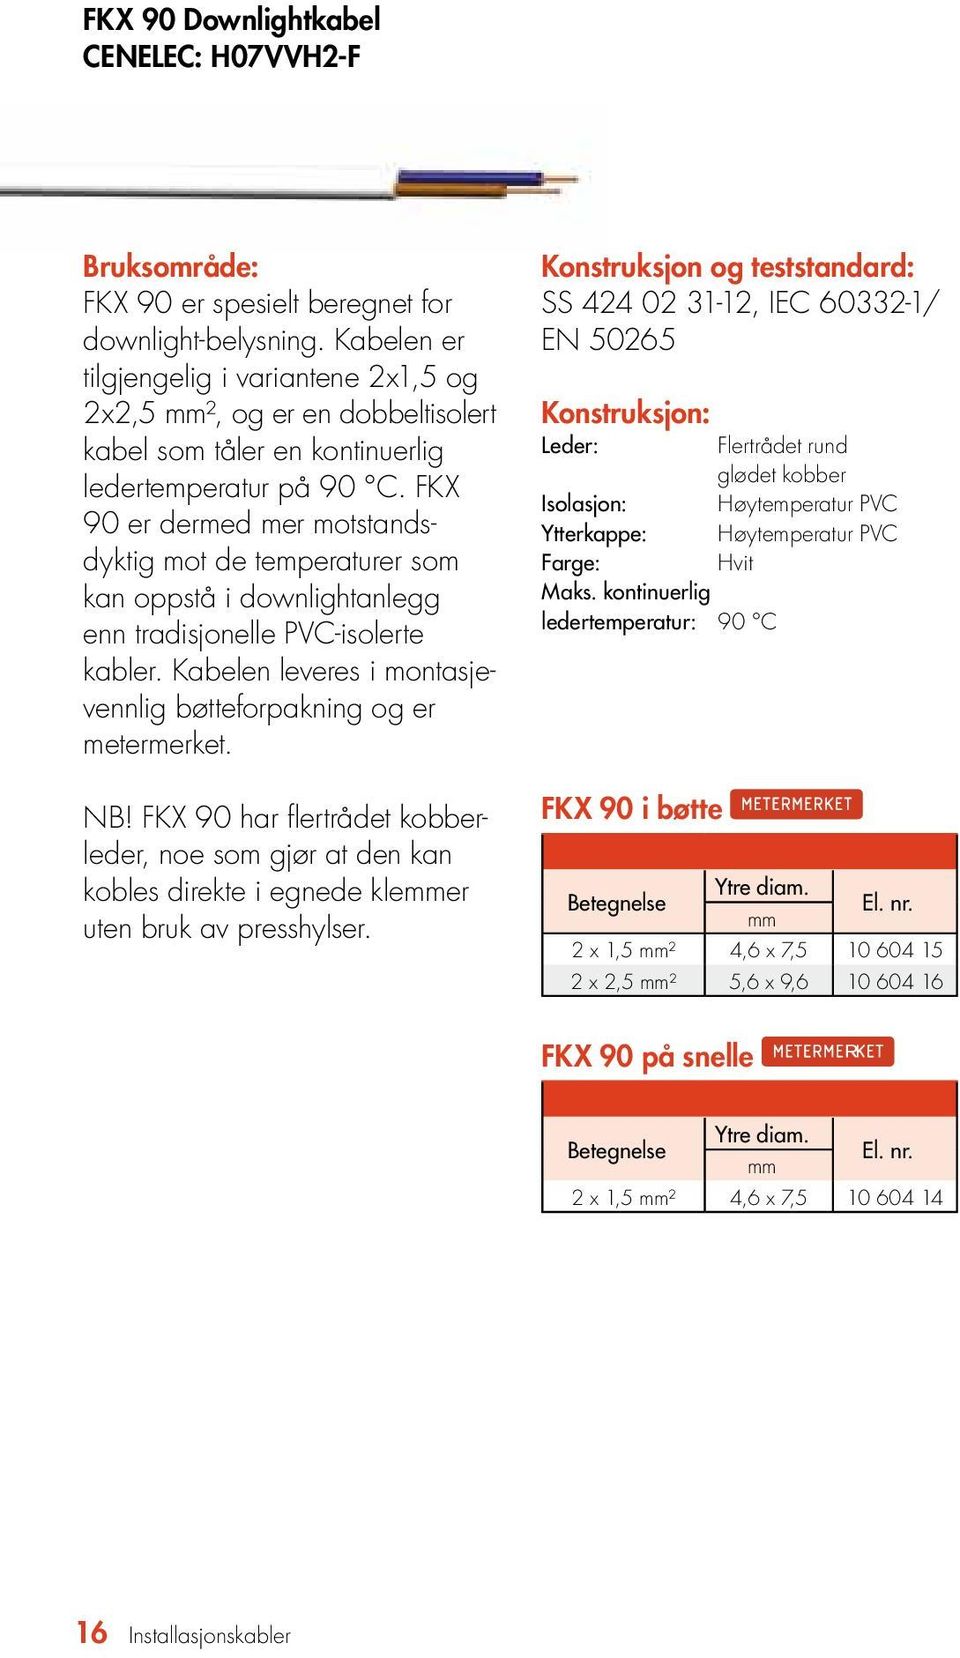 FKX 90 er dermed mer motstandsdyktig mot de temp eraturer som kan oppstå i downlightanlegg enn tradisjonelle PVC-isolerte kabler. Kabelen leveres i montasjevennlig bøttefor pakning og er metermerket.